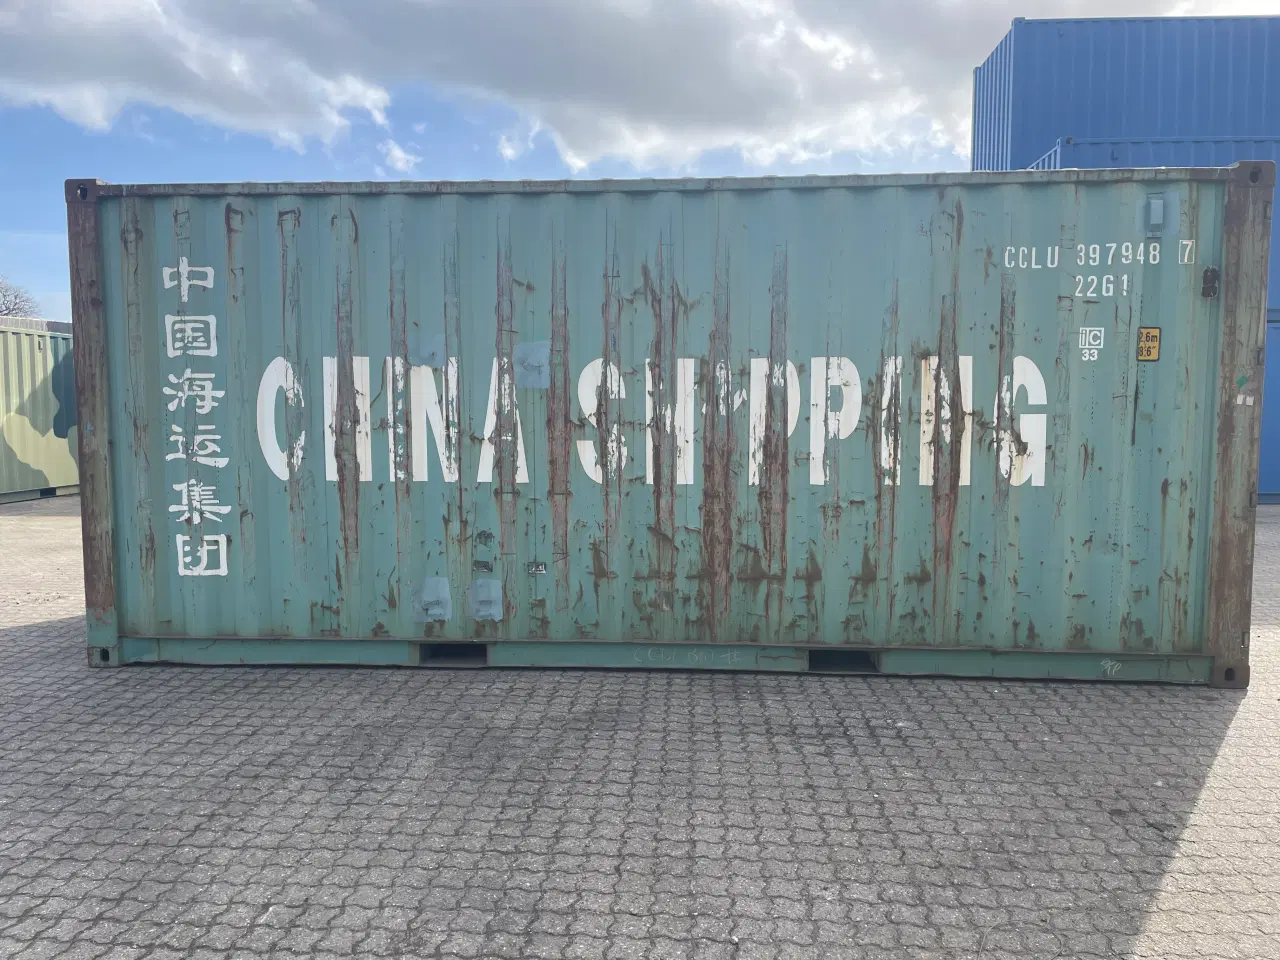 Billede 5 - 20 fods Container - ID: CCLU 397948-7